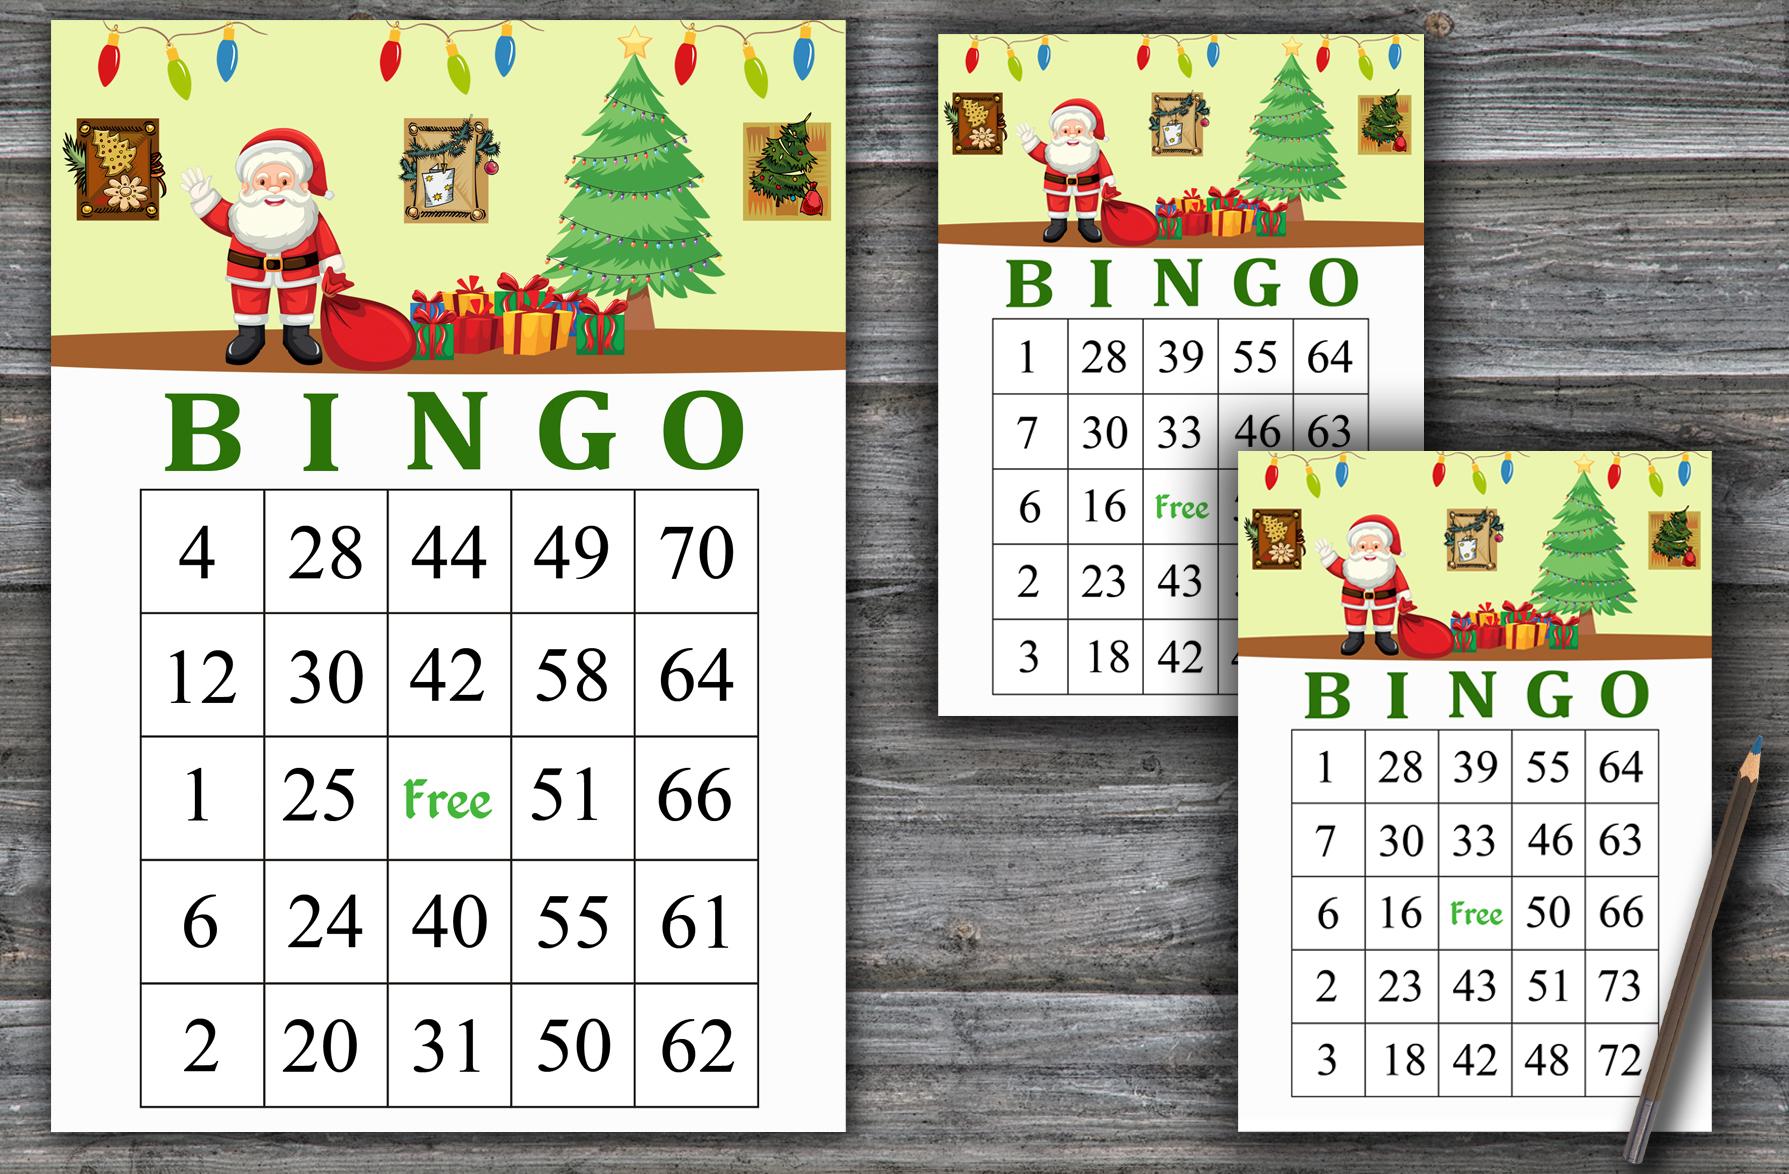 Santa claus bingo bingo game,Santa claus bingo card,Christmas bingo game,Christmas Party bingo,Holiday Bingo card,INSTANT DOWNLOAD